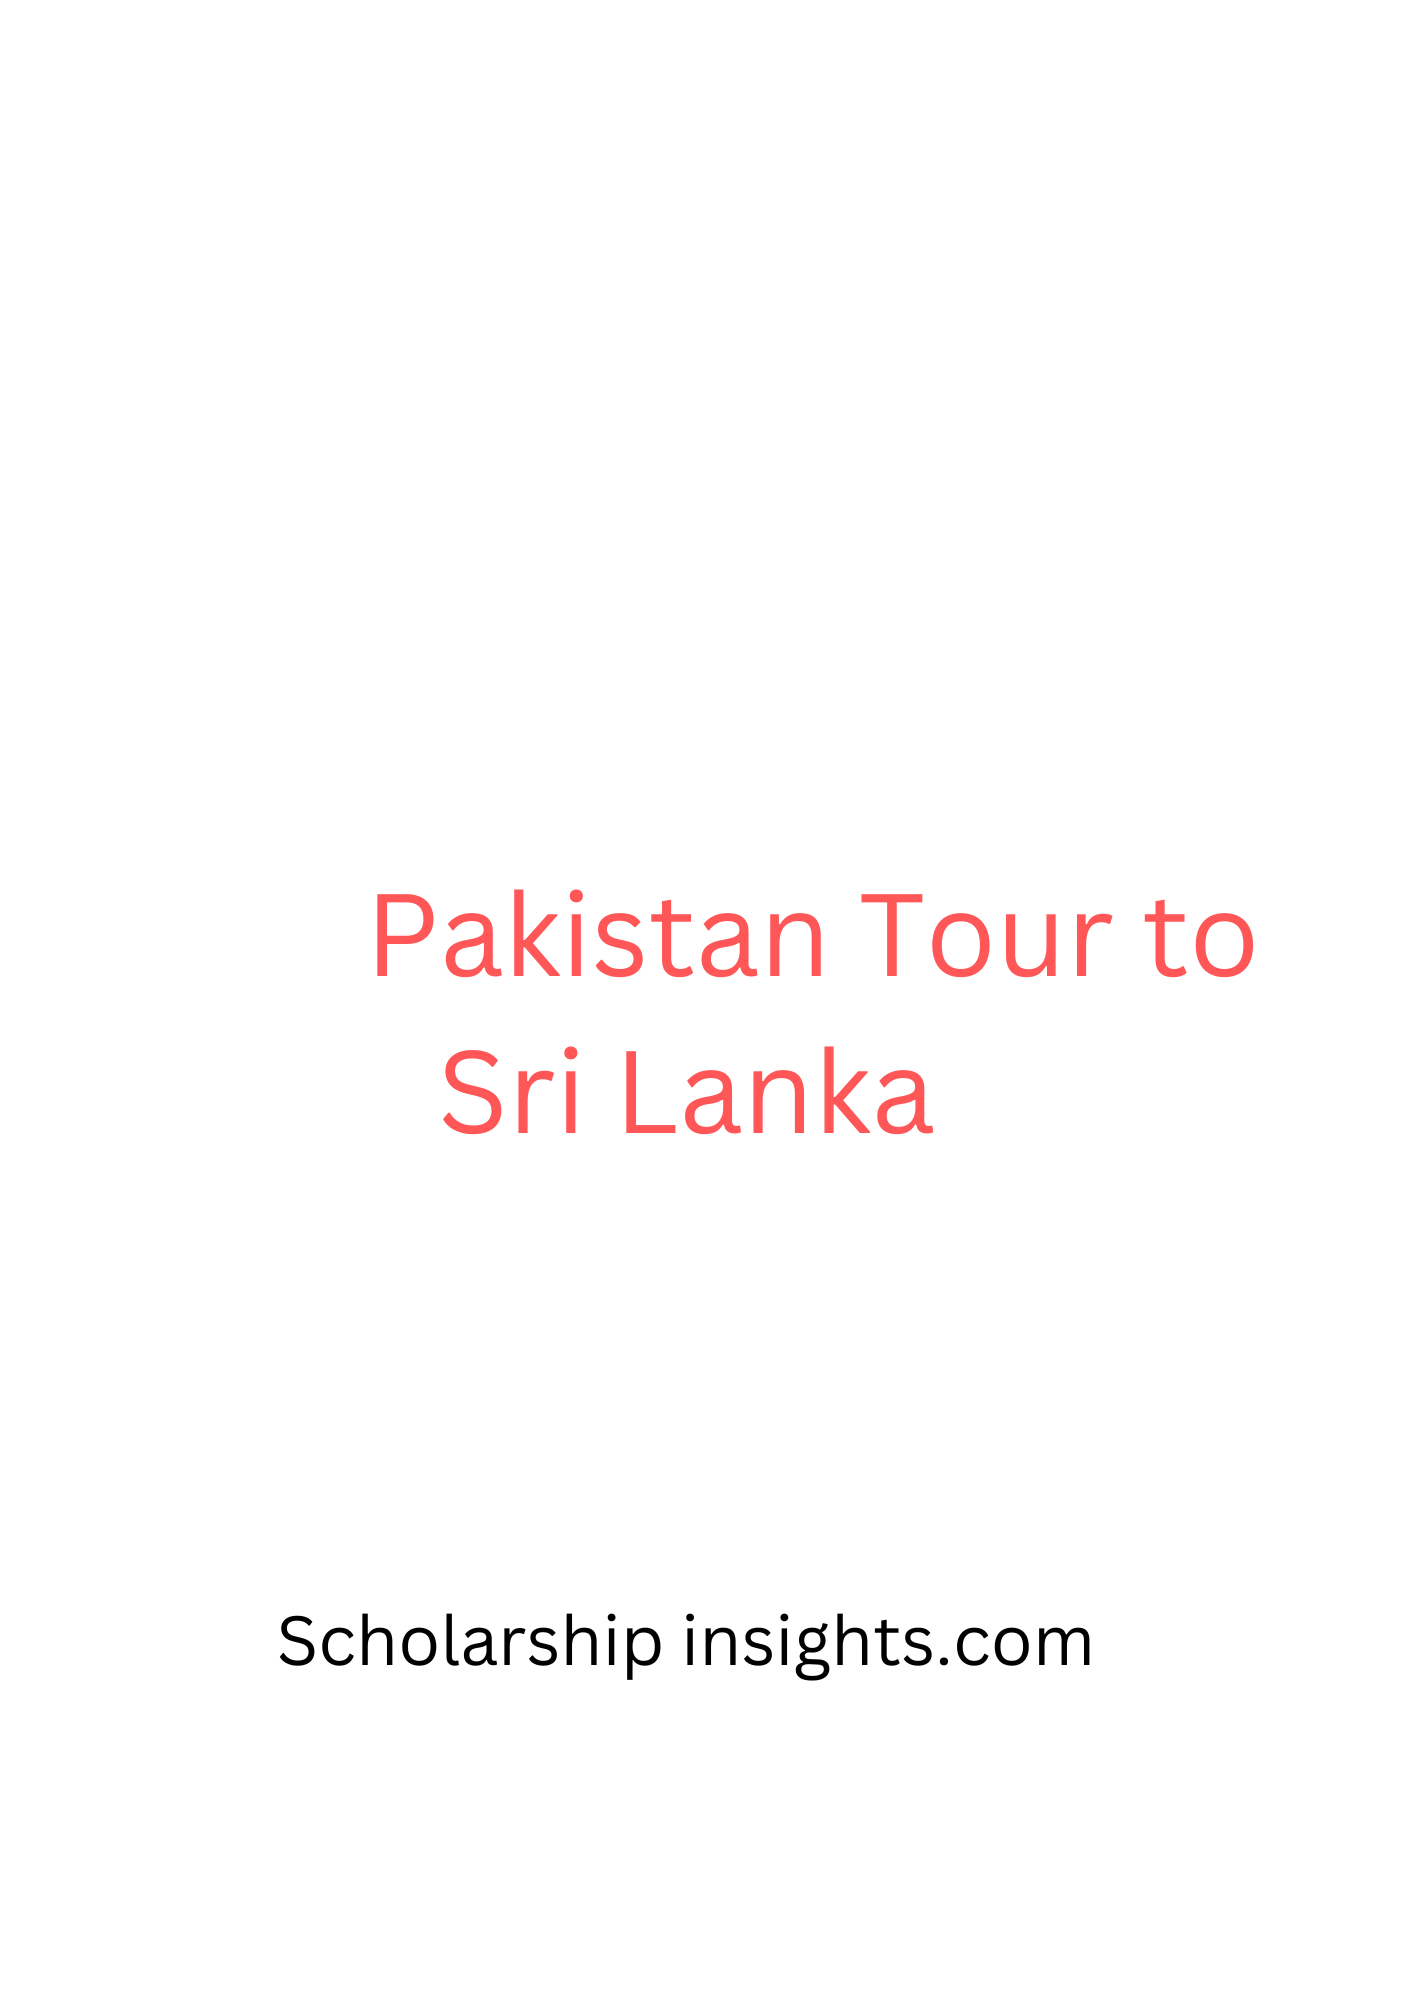 Pakistan tour to Sri Lanka